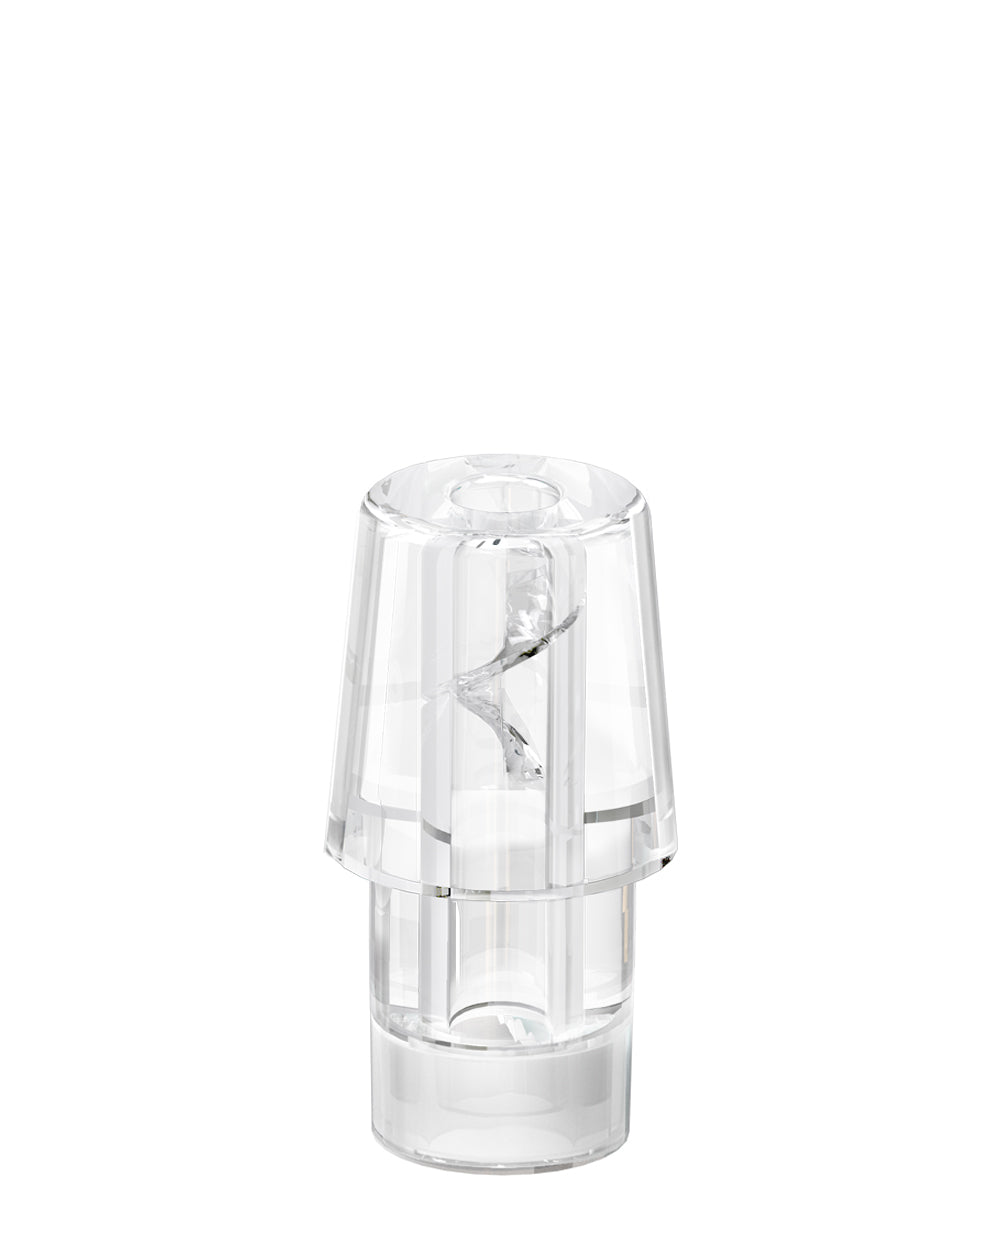 AVD | Stem White Hemp Plastic Blend Rechargeable Disposable Vape Pen w/ Clear Vortex Mouthpiece | 1mL - 220 mAh  - 3